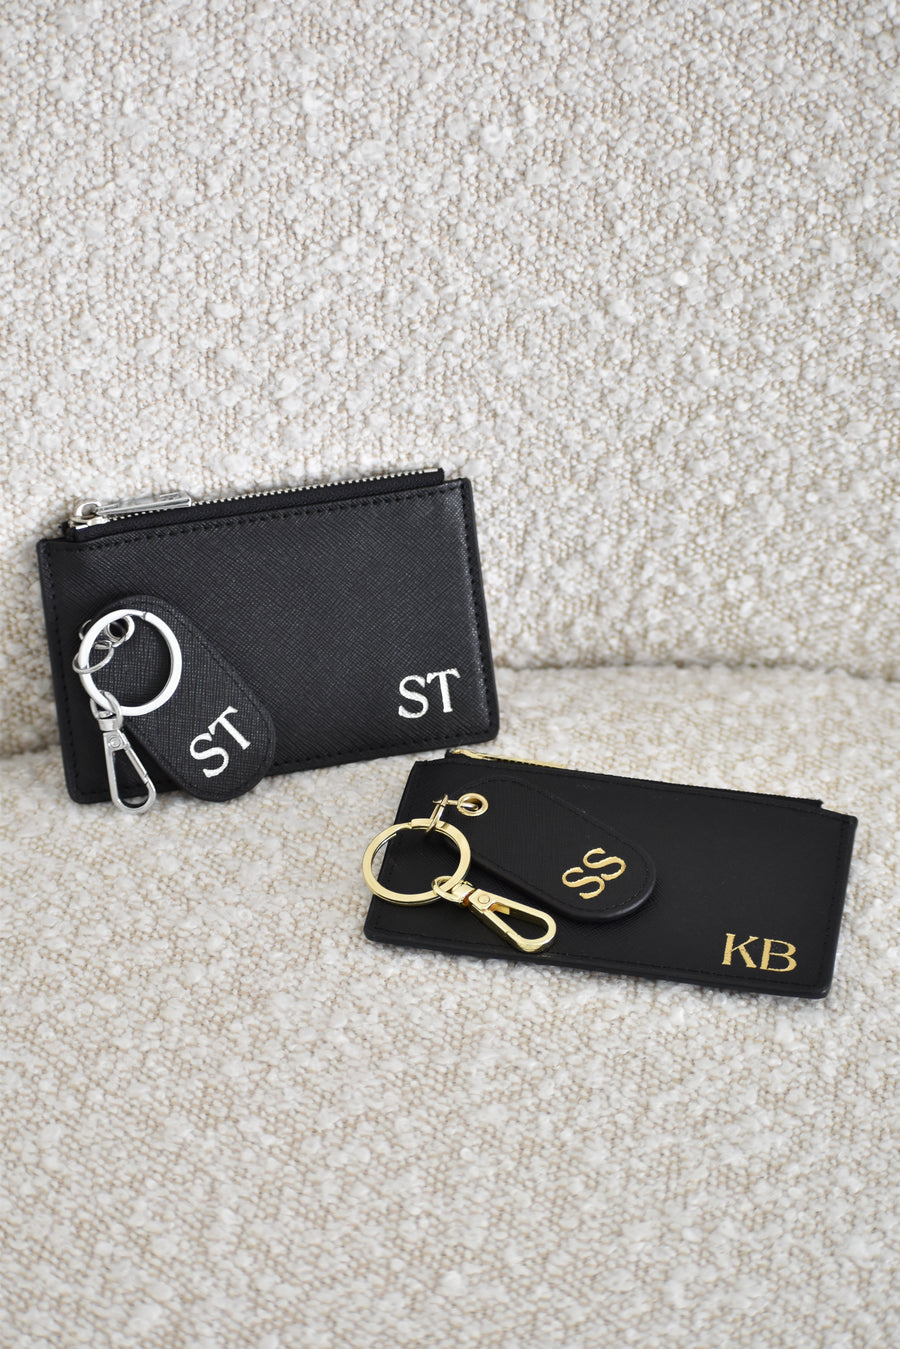 Personalised Zipper Cardholder & Oval Keyring Gift Bundle - Black